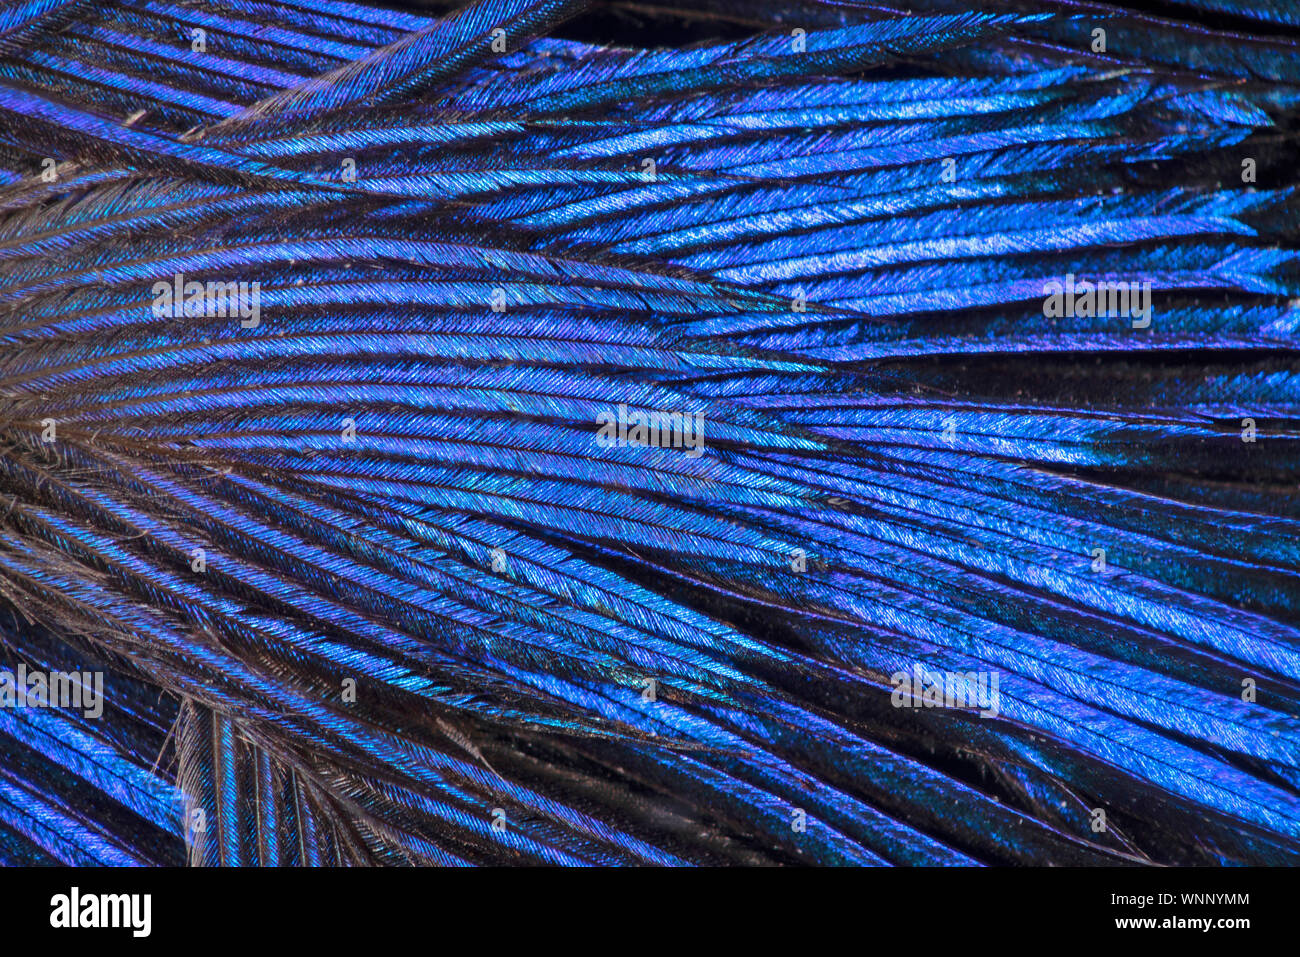 Detalle de plumas de aves mostrando iridiscencia azul (también conocido como goniochromism) Foto de stock